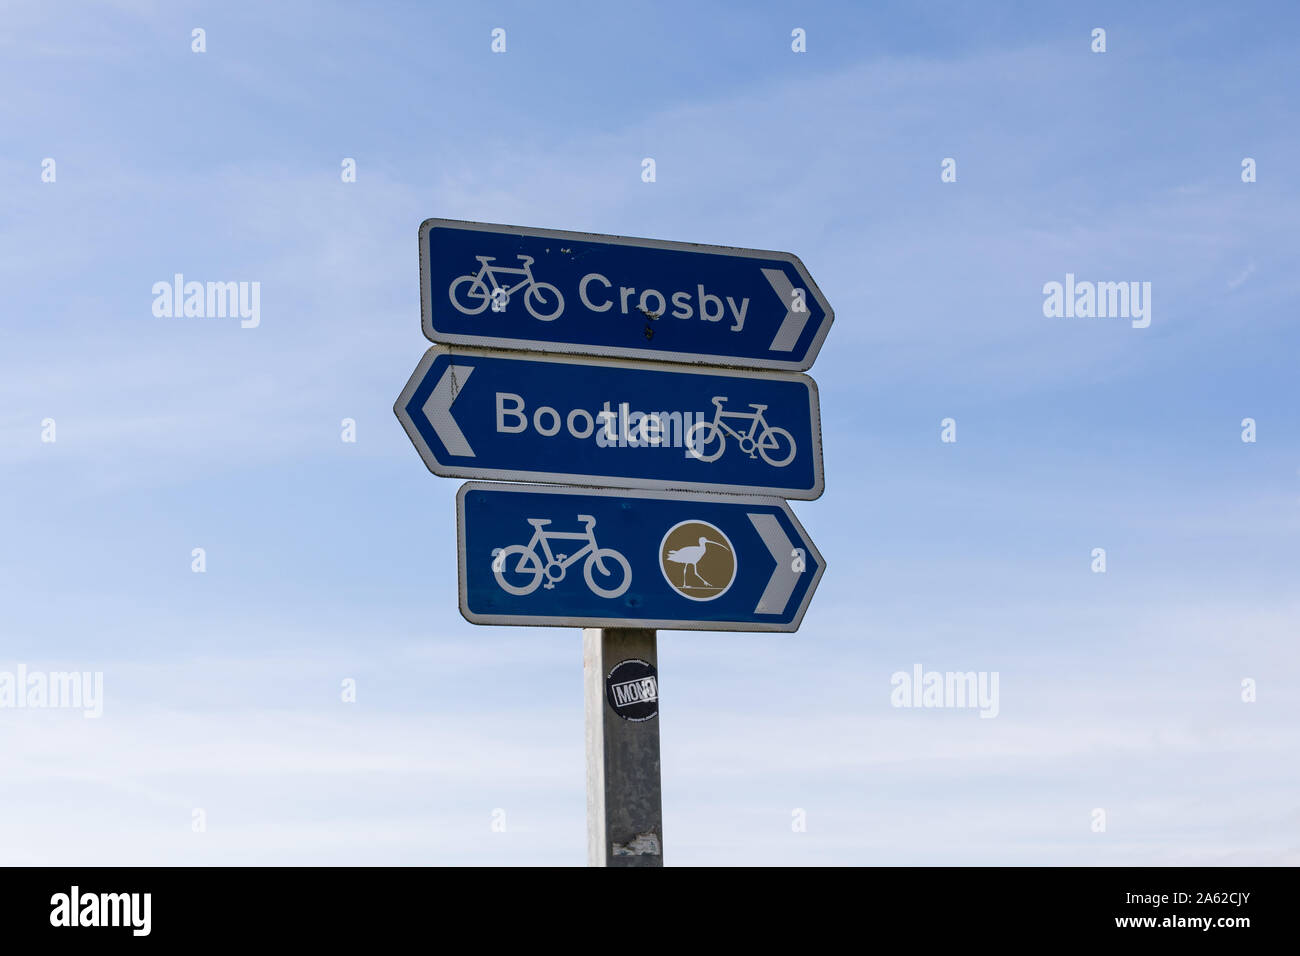 Randonnée à vélo direction de Crosby et de Bootle, Merseyside, England, UK Banque D'Images